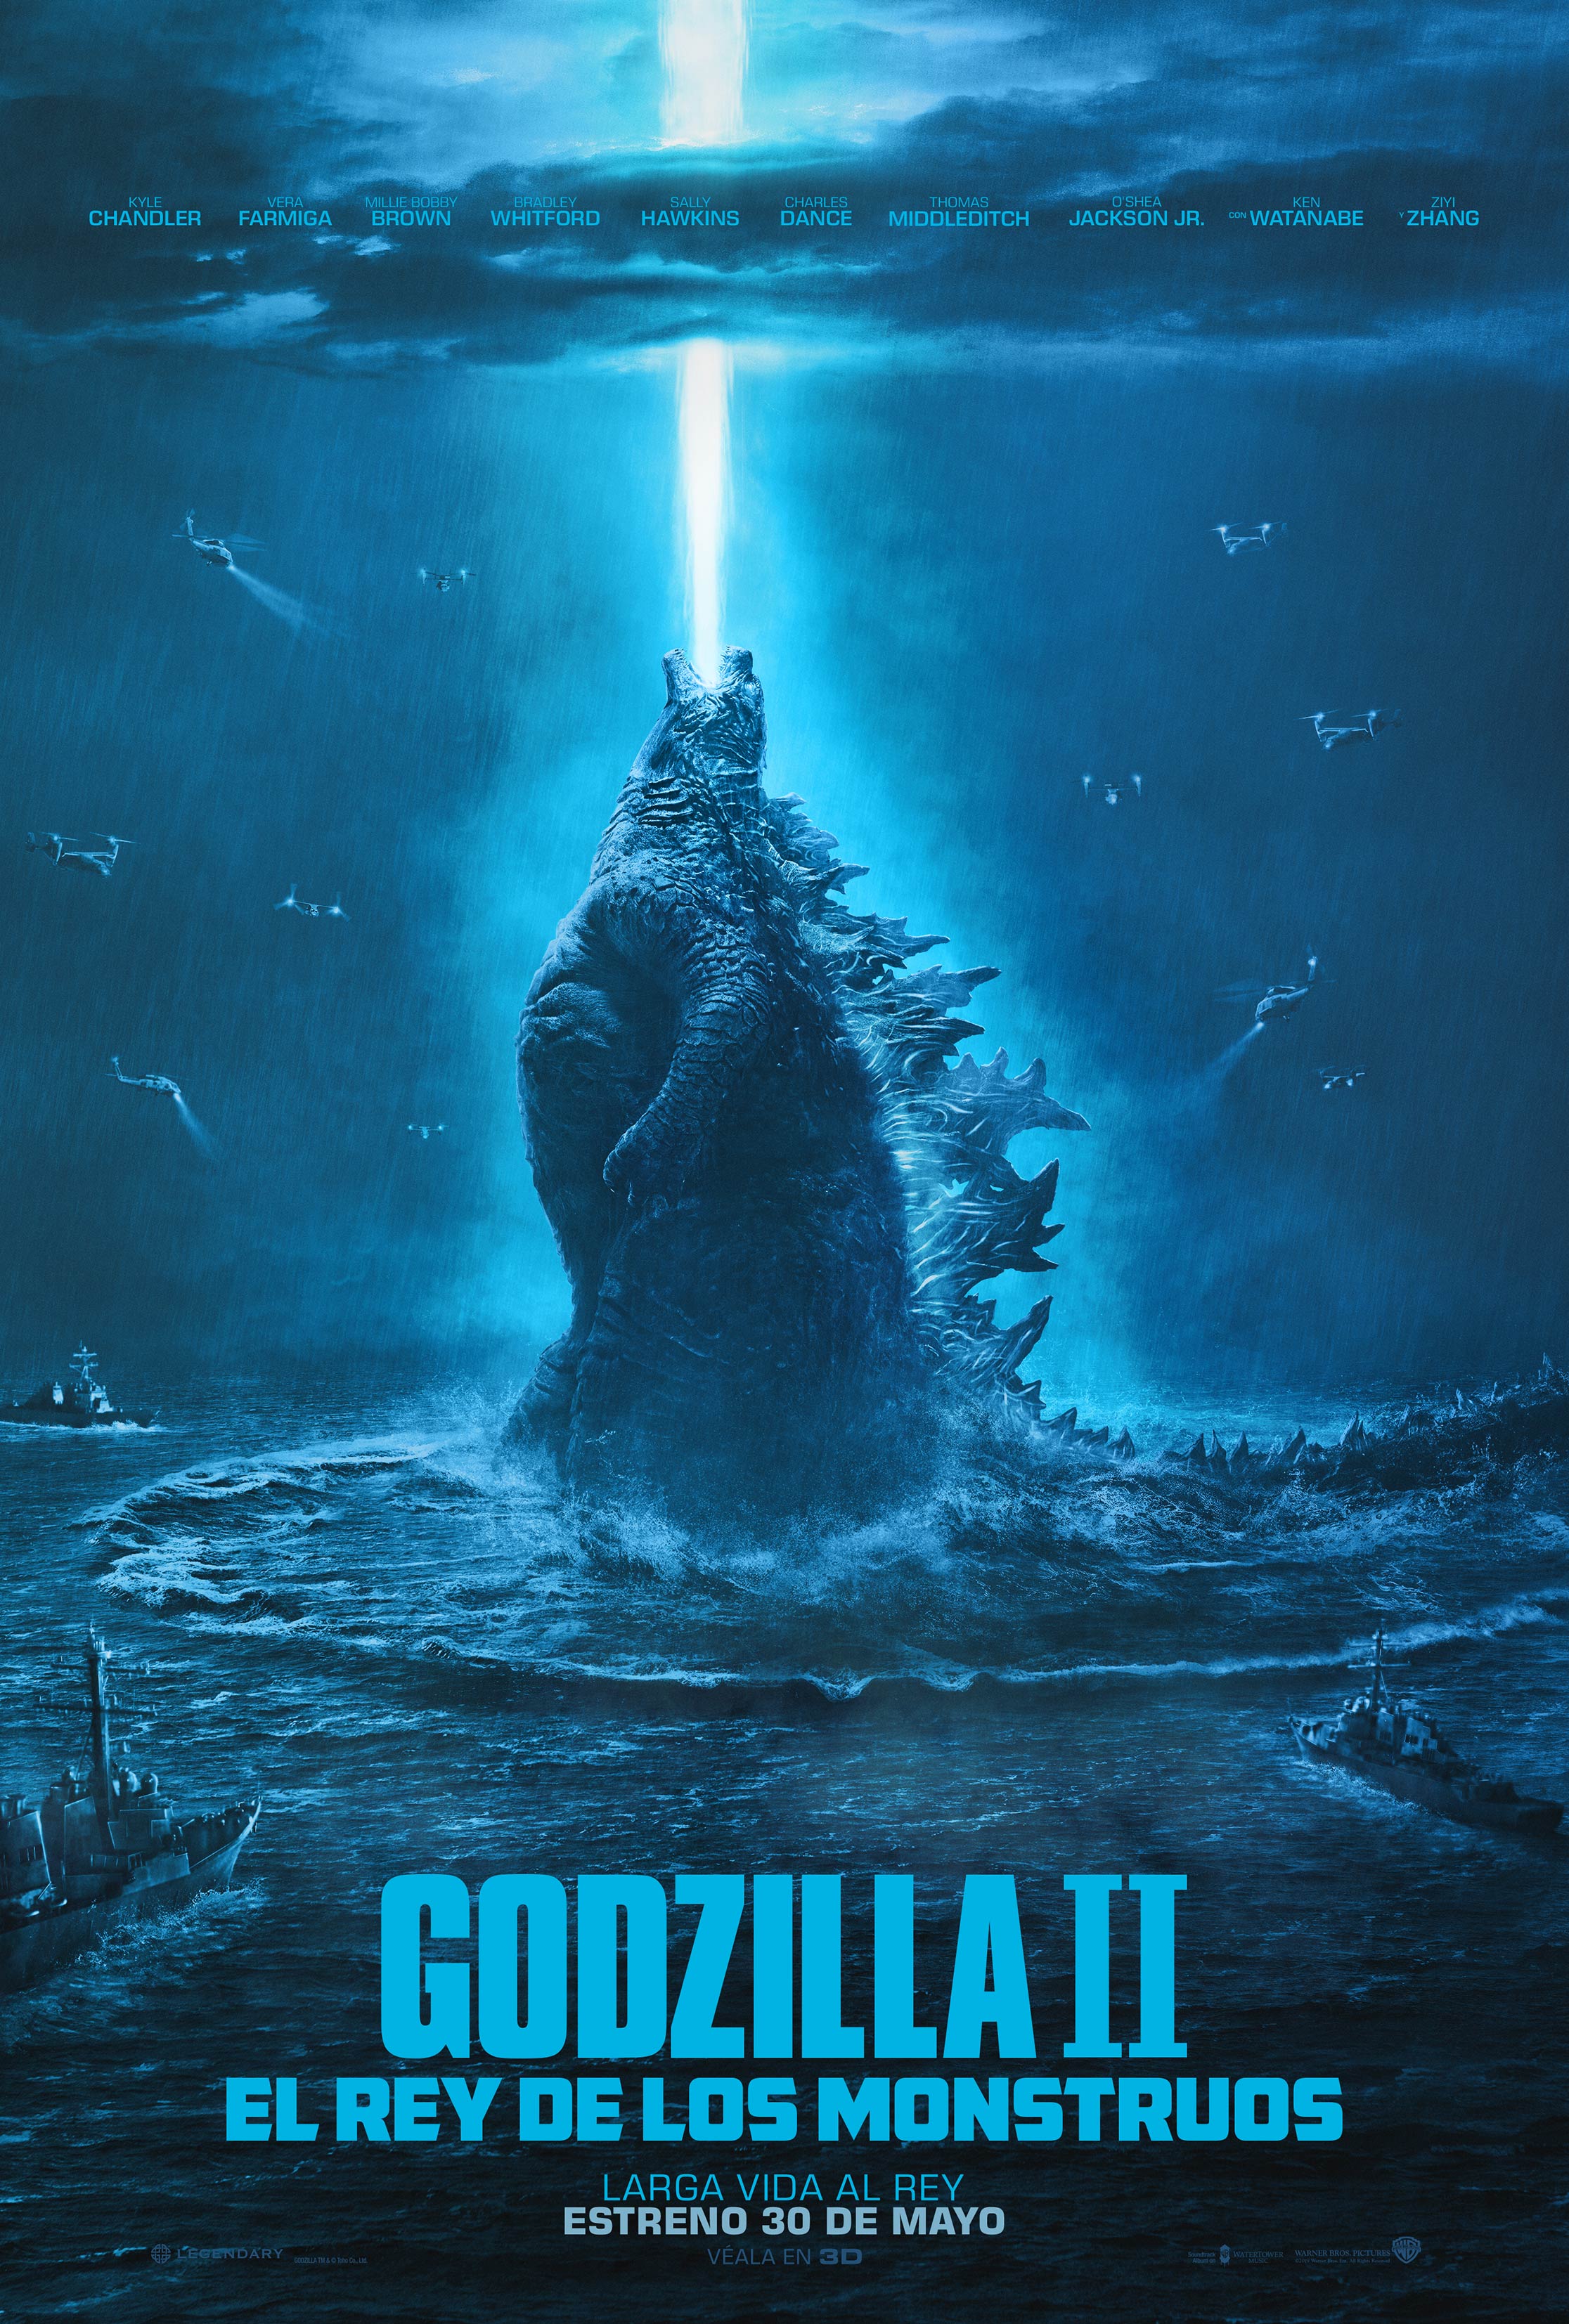  Crítica de cine: Godzilla Rey de los Monstruos